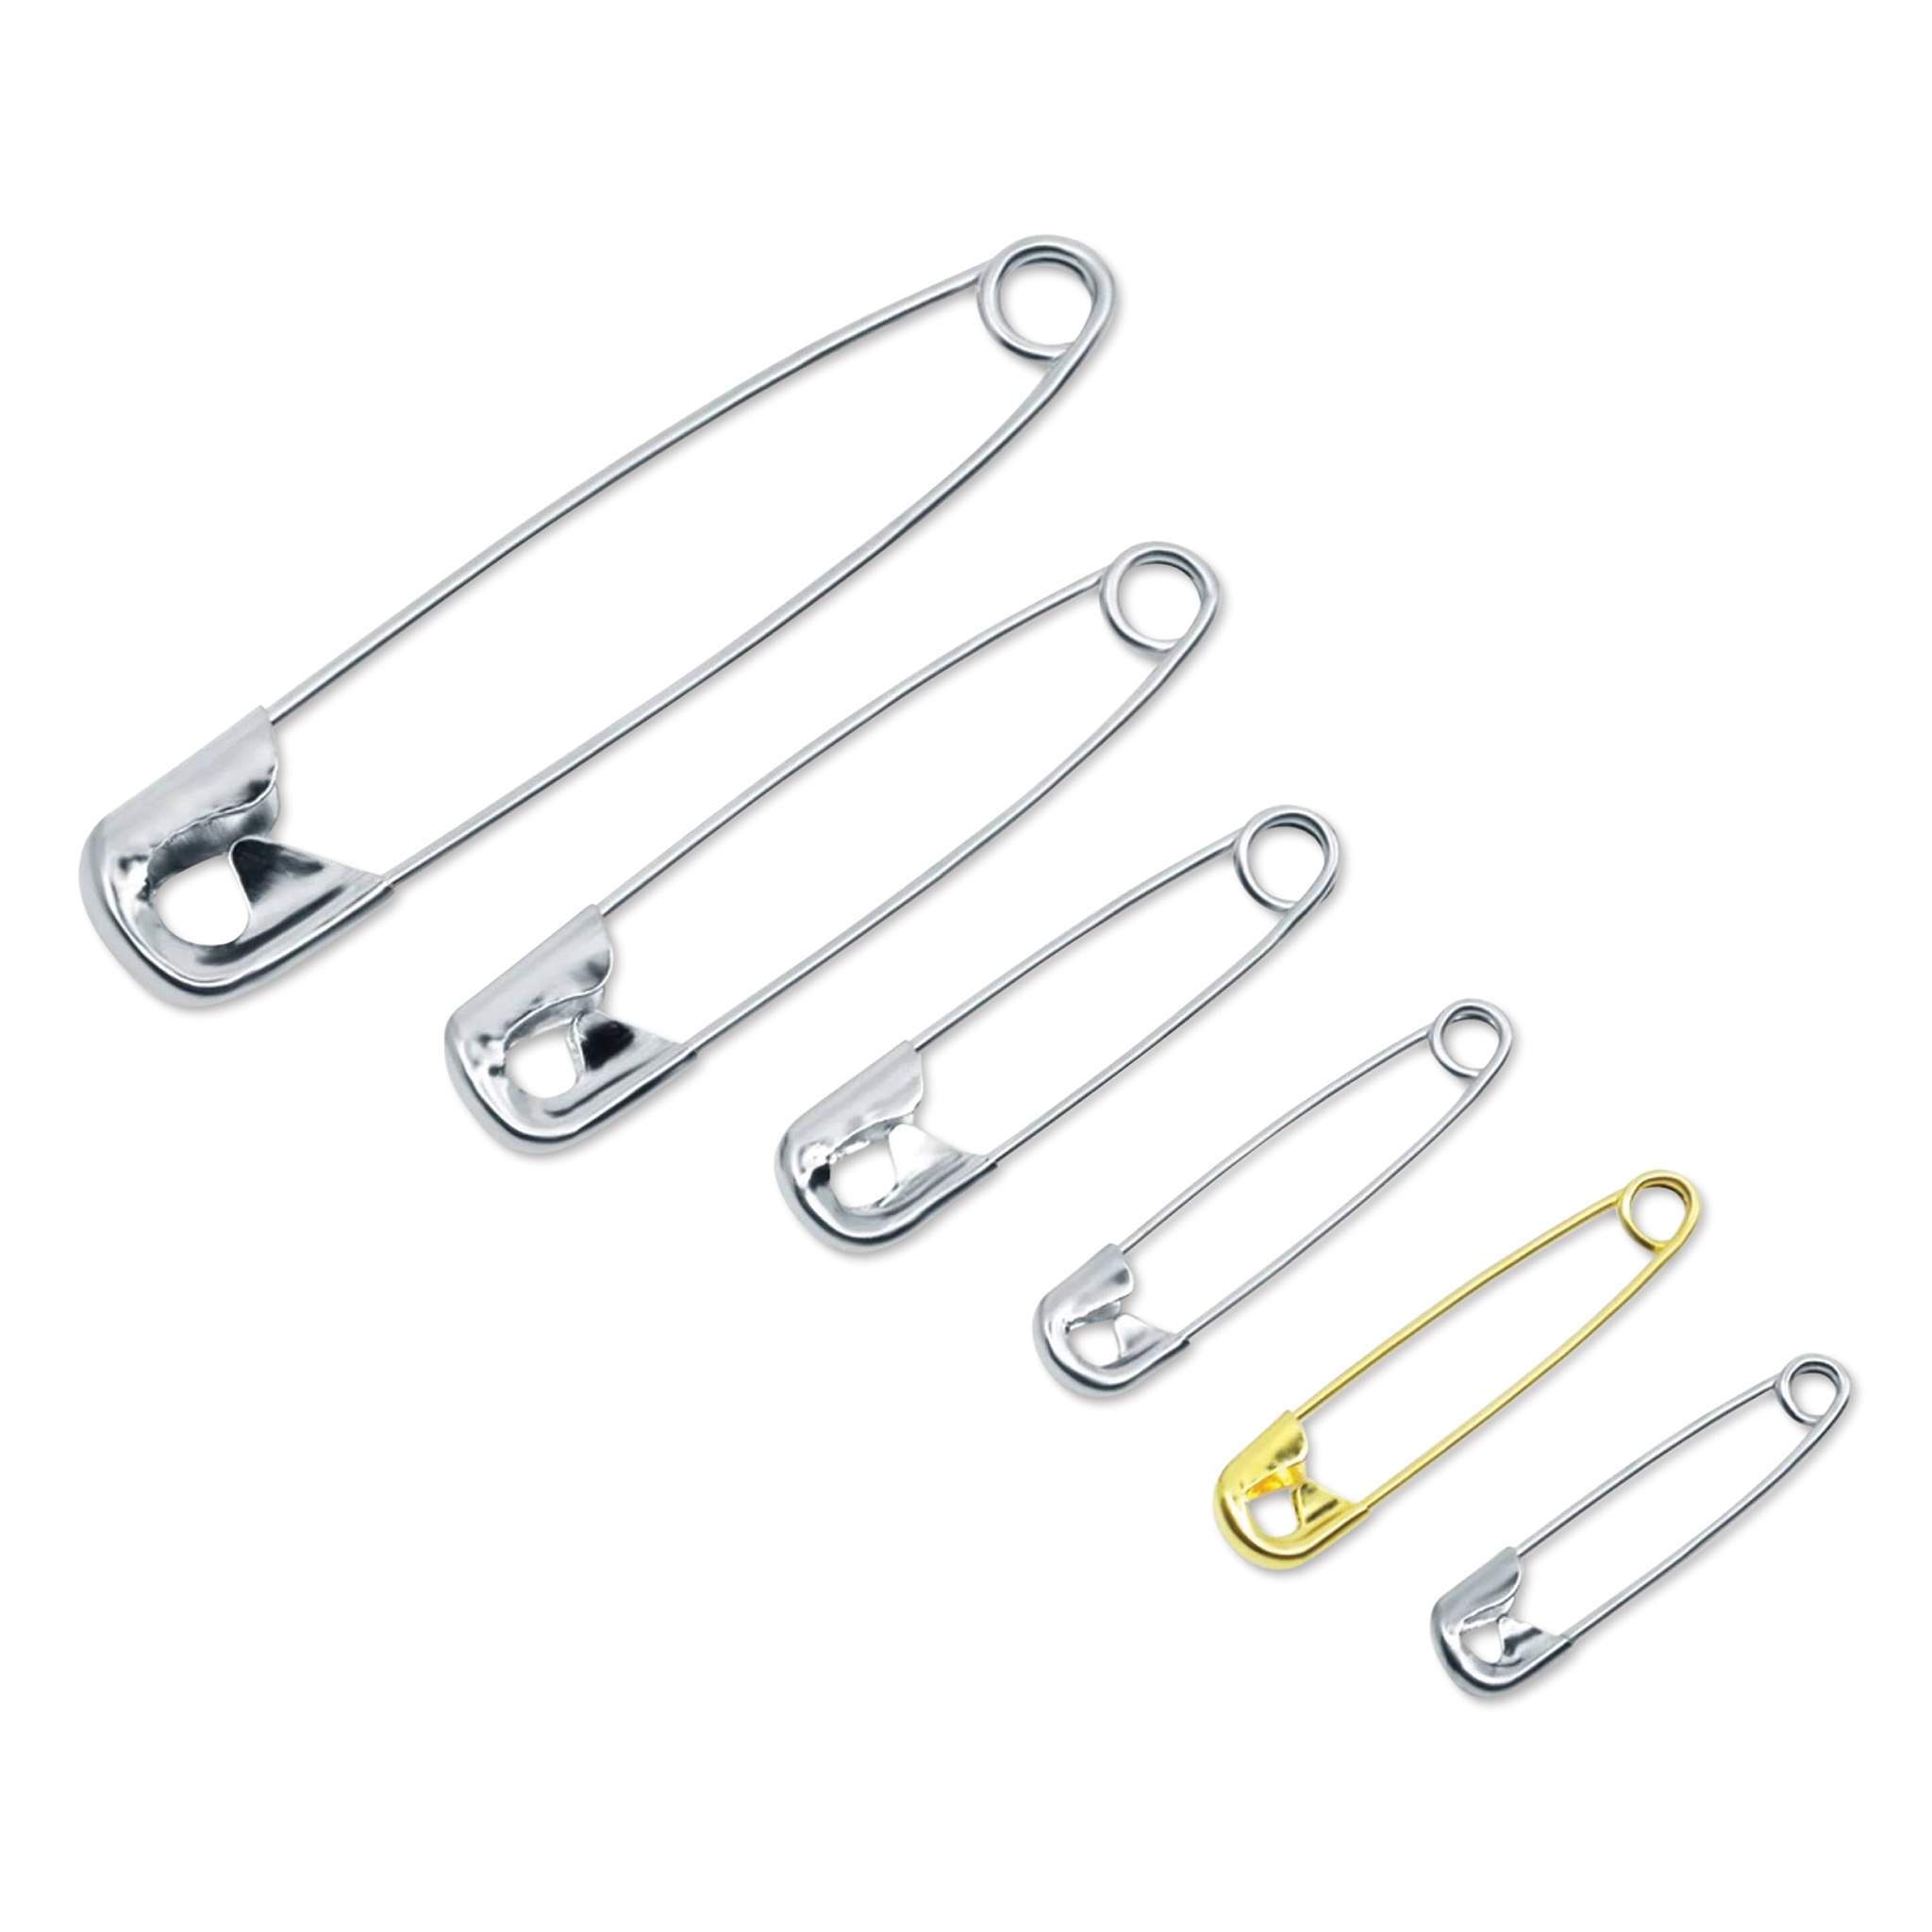 Safety Pins Assorted (12) – Brenniston